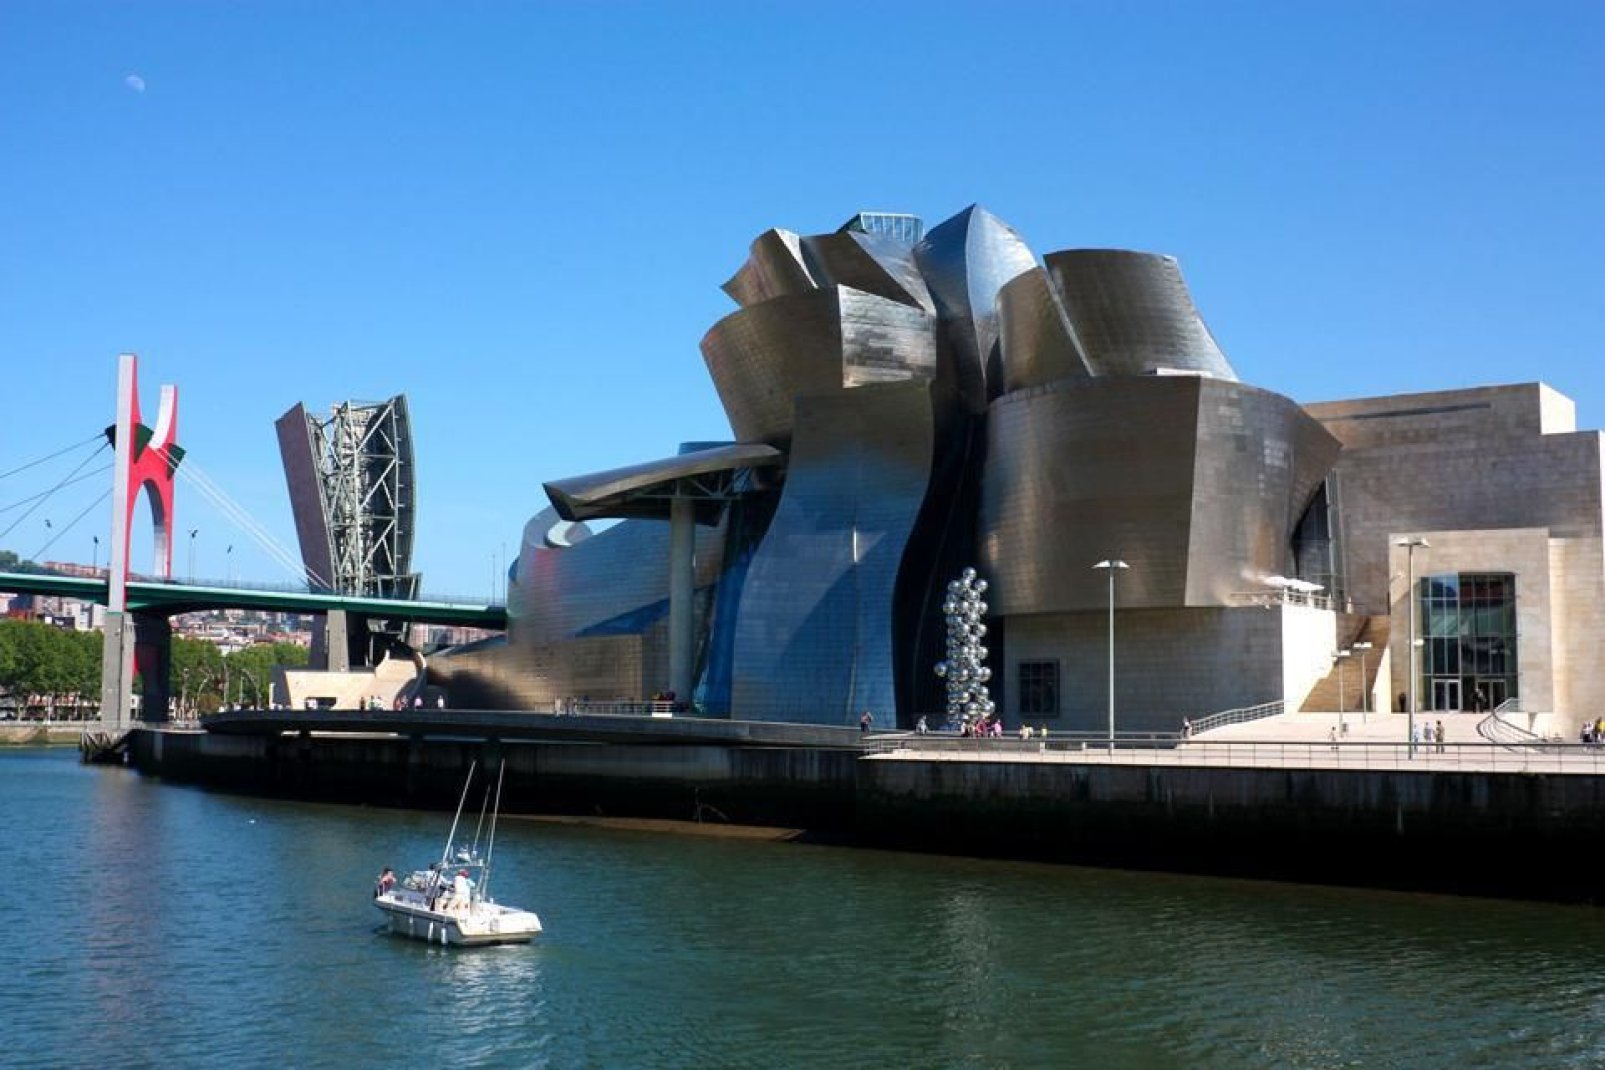 Das Gebäude wurde von Frank Gehry entworfen und konzipiert, seine Formen und die verwendeten Materialien symbolisieren die Werftindustrie.